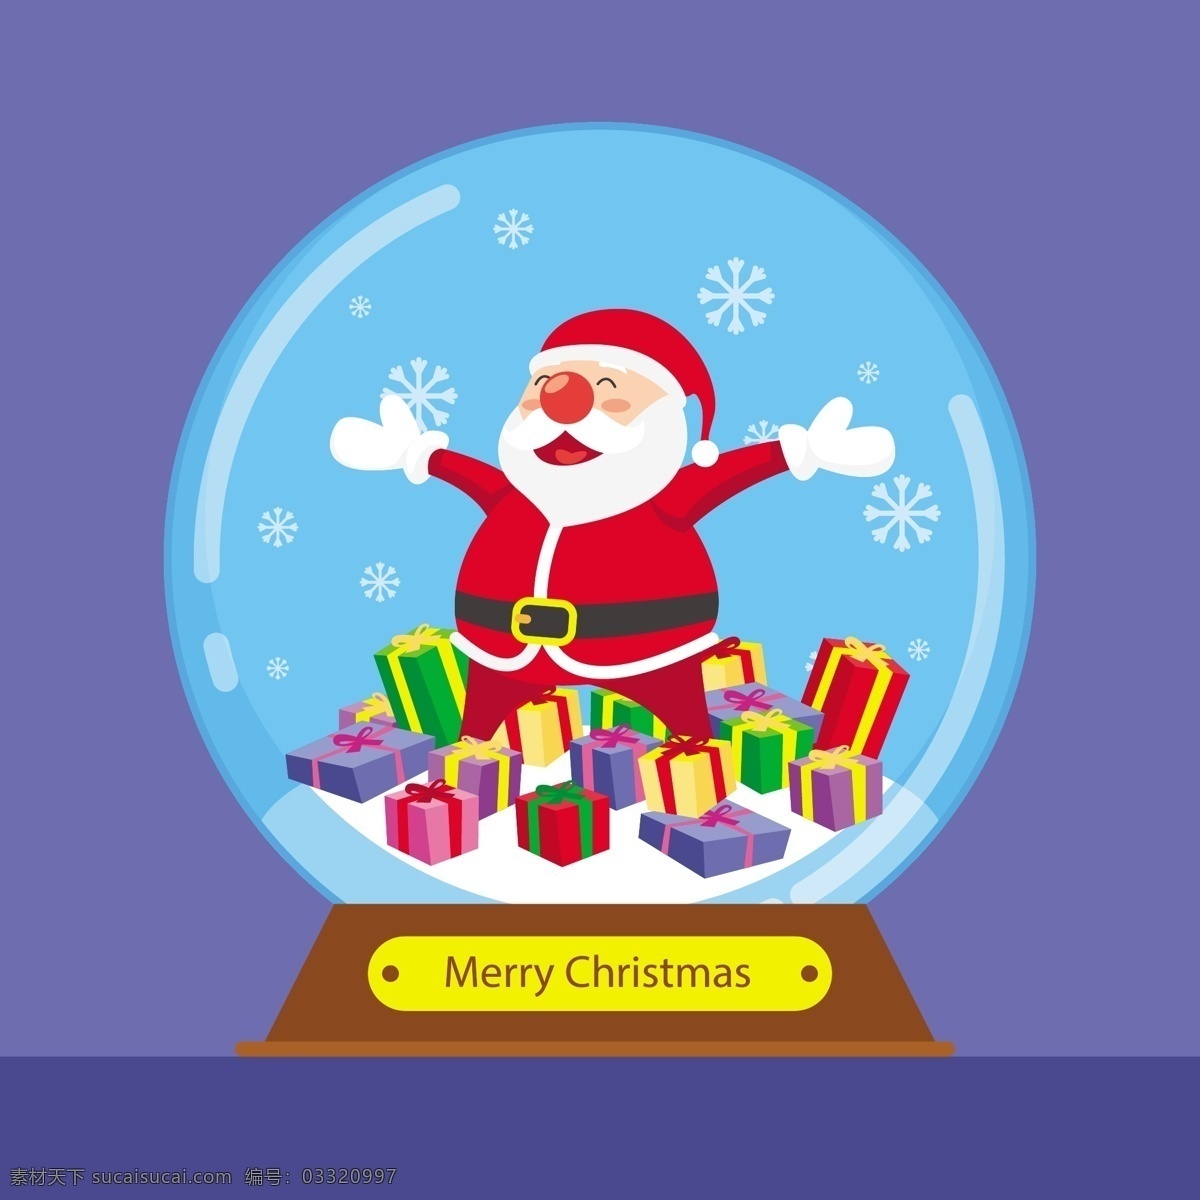 节日素材 礼物 圣诞 圣诞节 圣诞老人 圣诞素材 圣诞雪球 圣诞雪球素材 圣诞元素